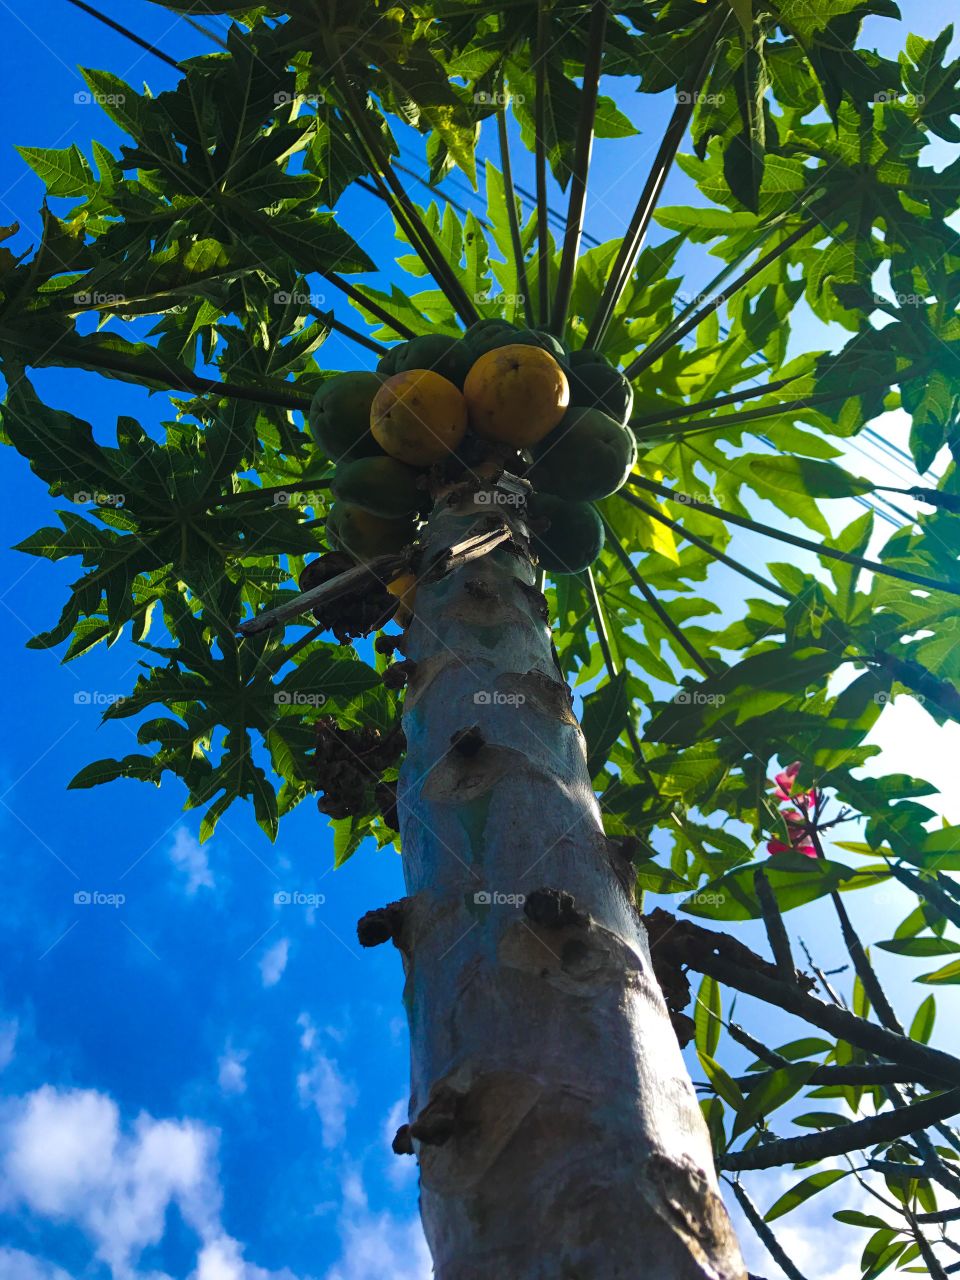 Papaya Tree/Fruit